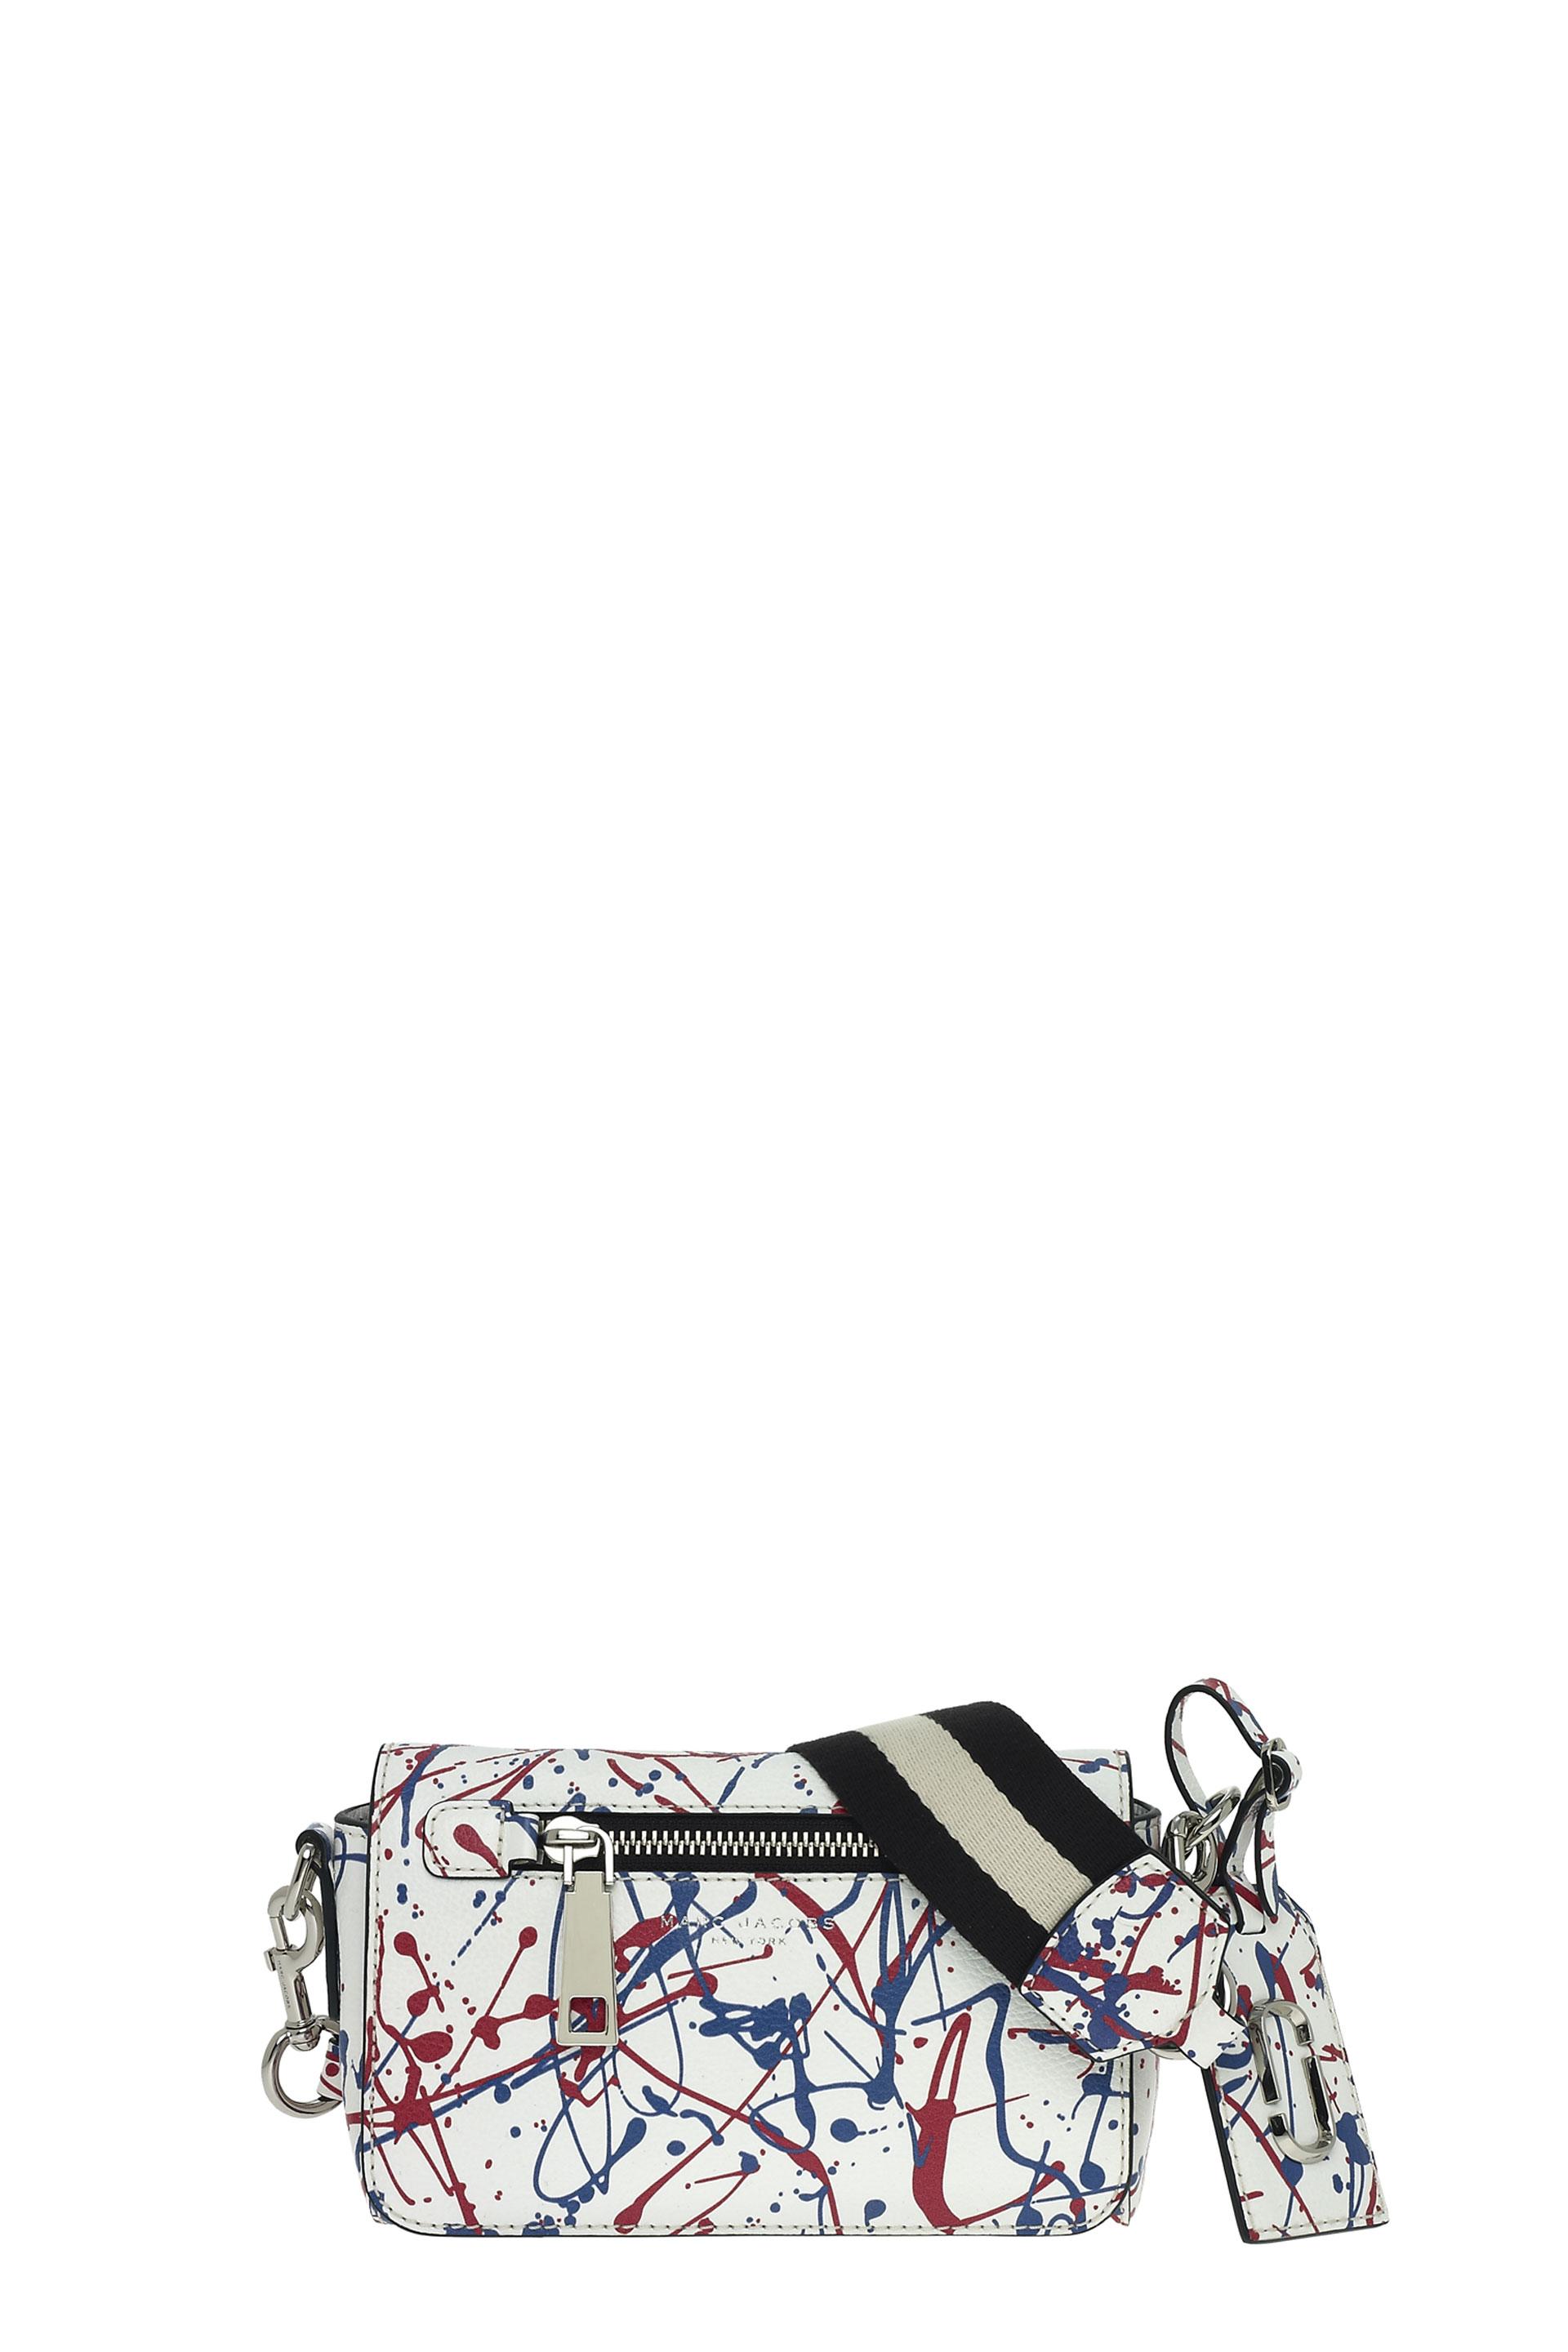 Marc Jacobs 'splatter Paint' Leather Crossbody Bag In White Multi ...